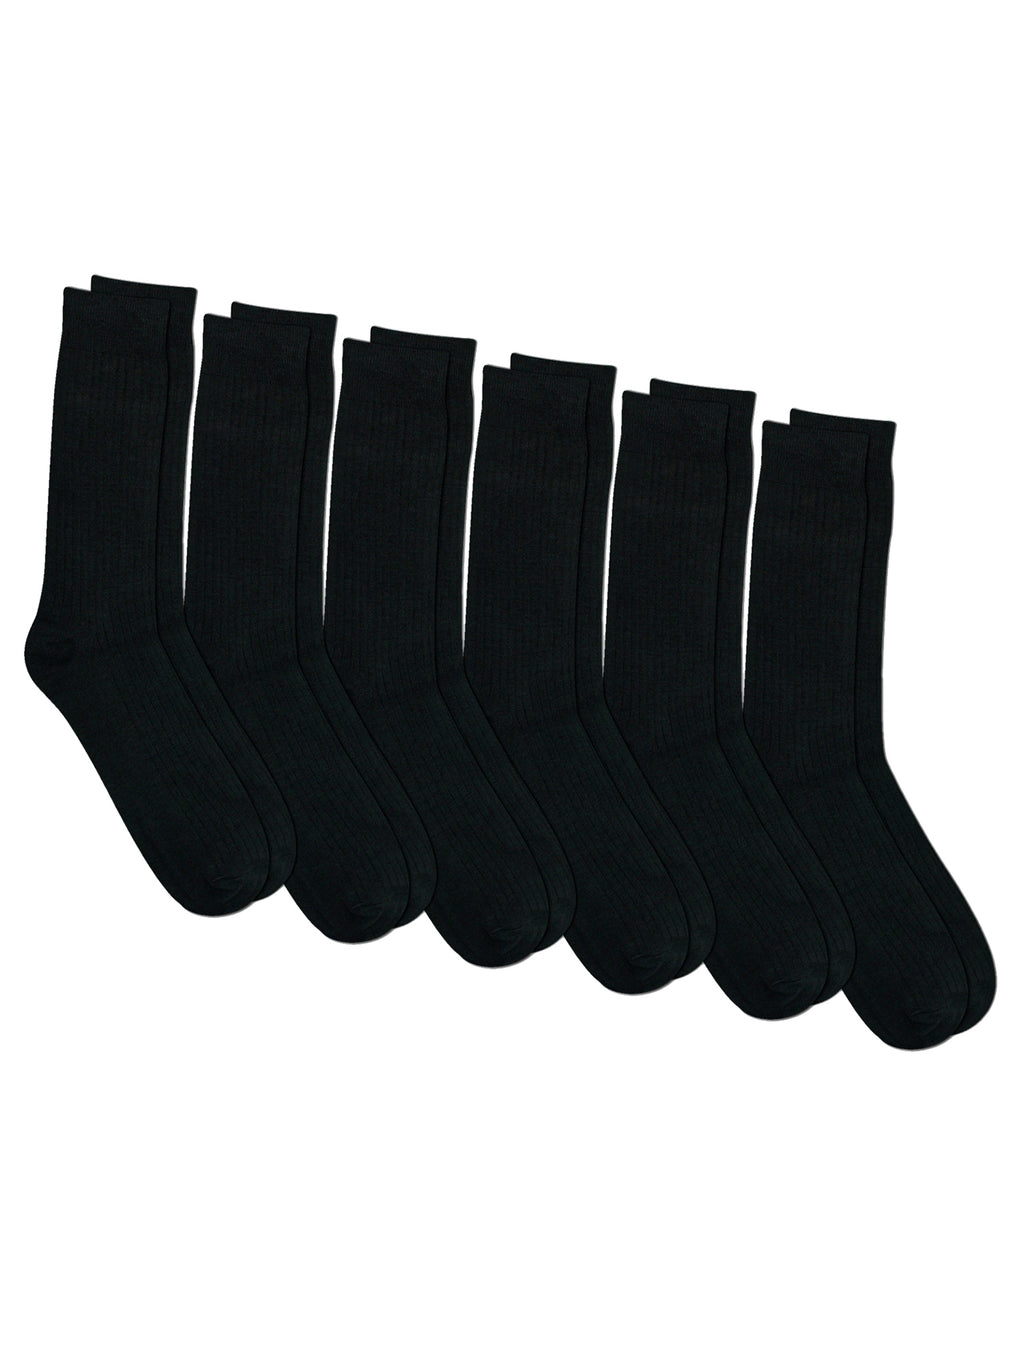 Mens All Black Crew Length Dress Socks 6 Pack